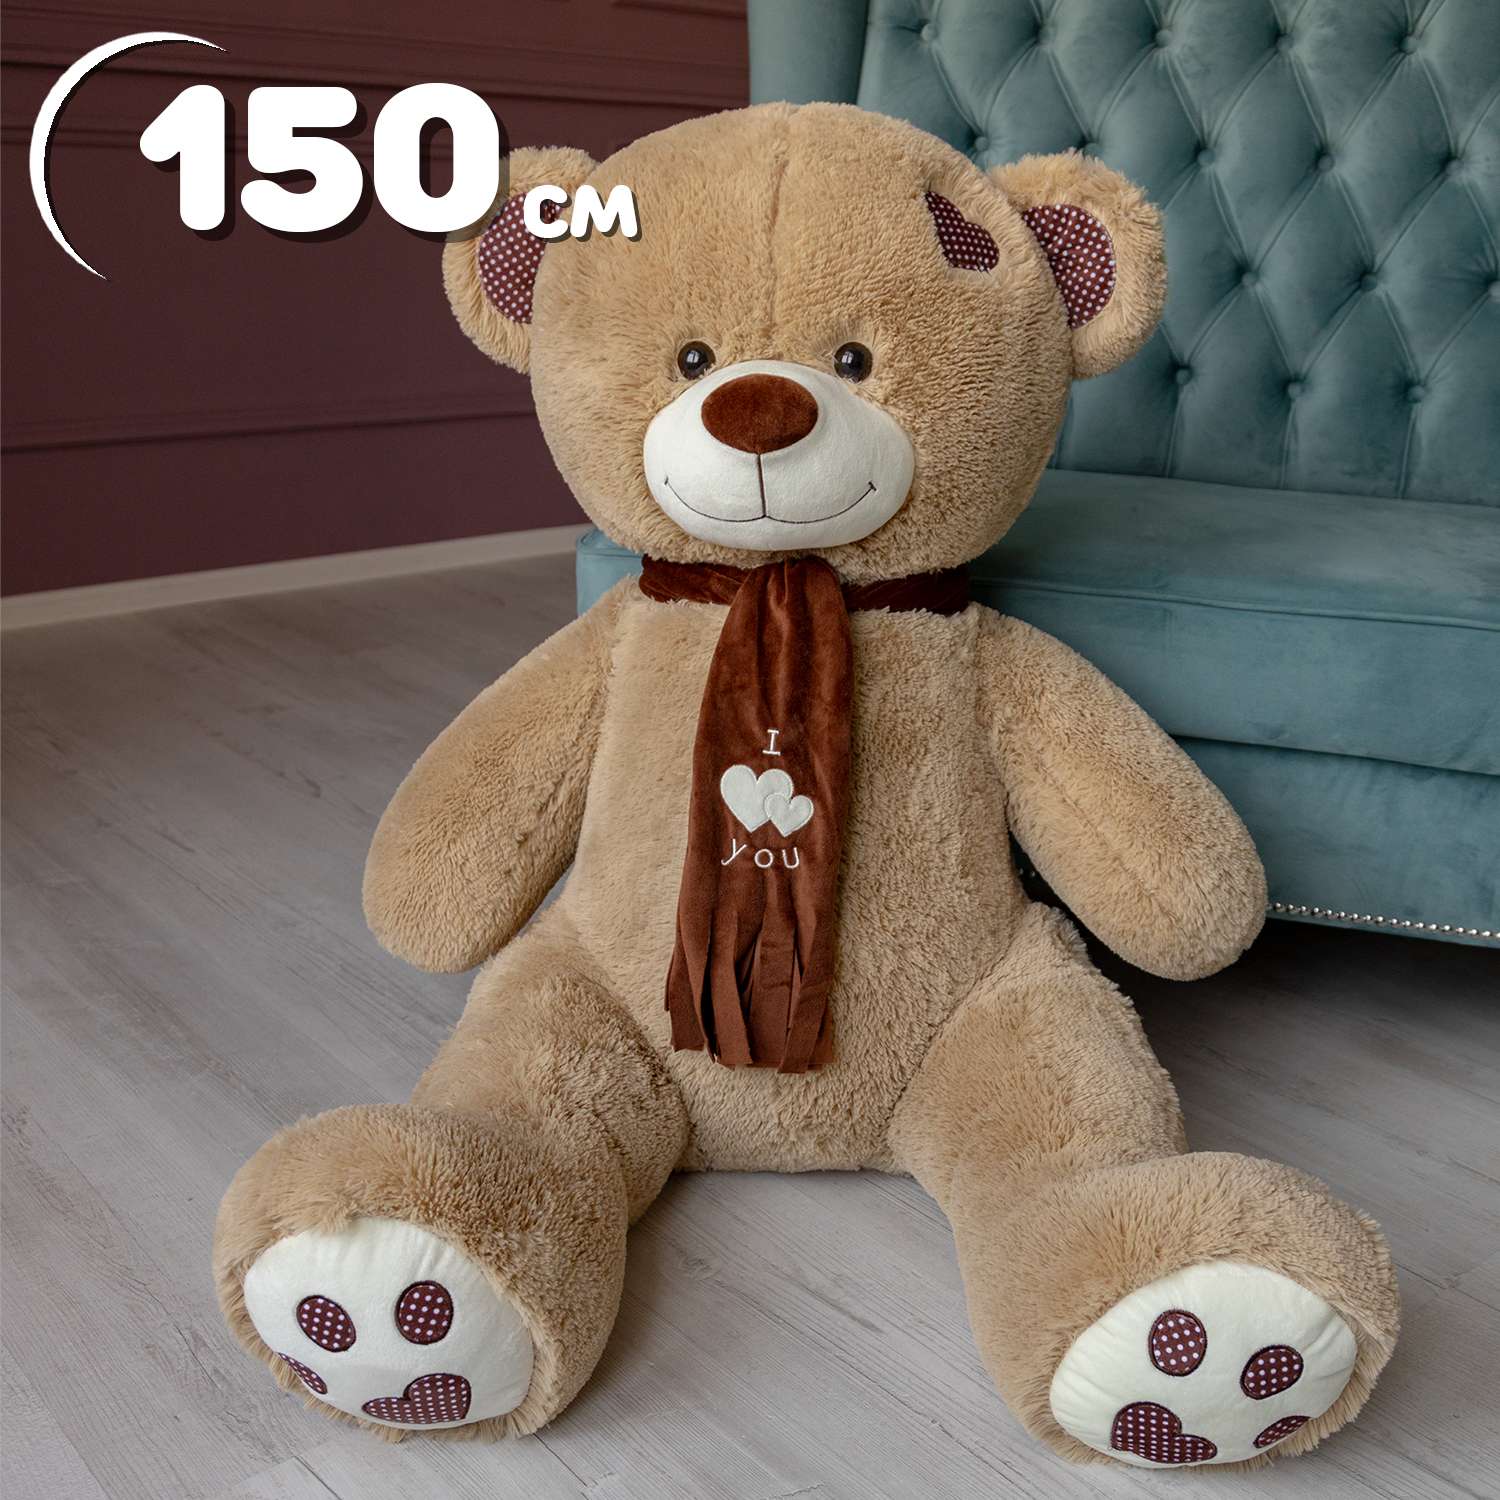 Мягкая игрушка Мягкие игрушки БелайТойс Плюшевый медведь Тони с шарфом 150 см цвет кофейный - фото 1